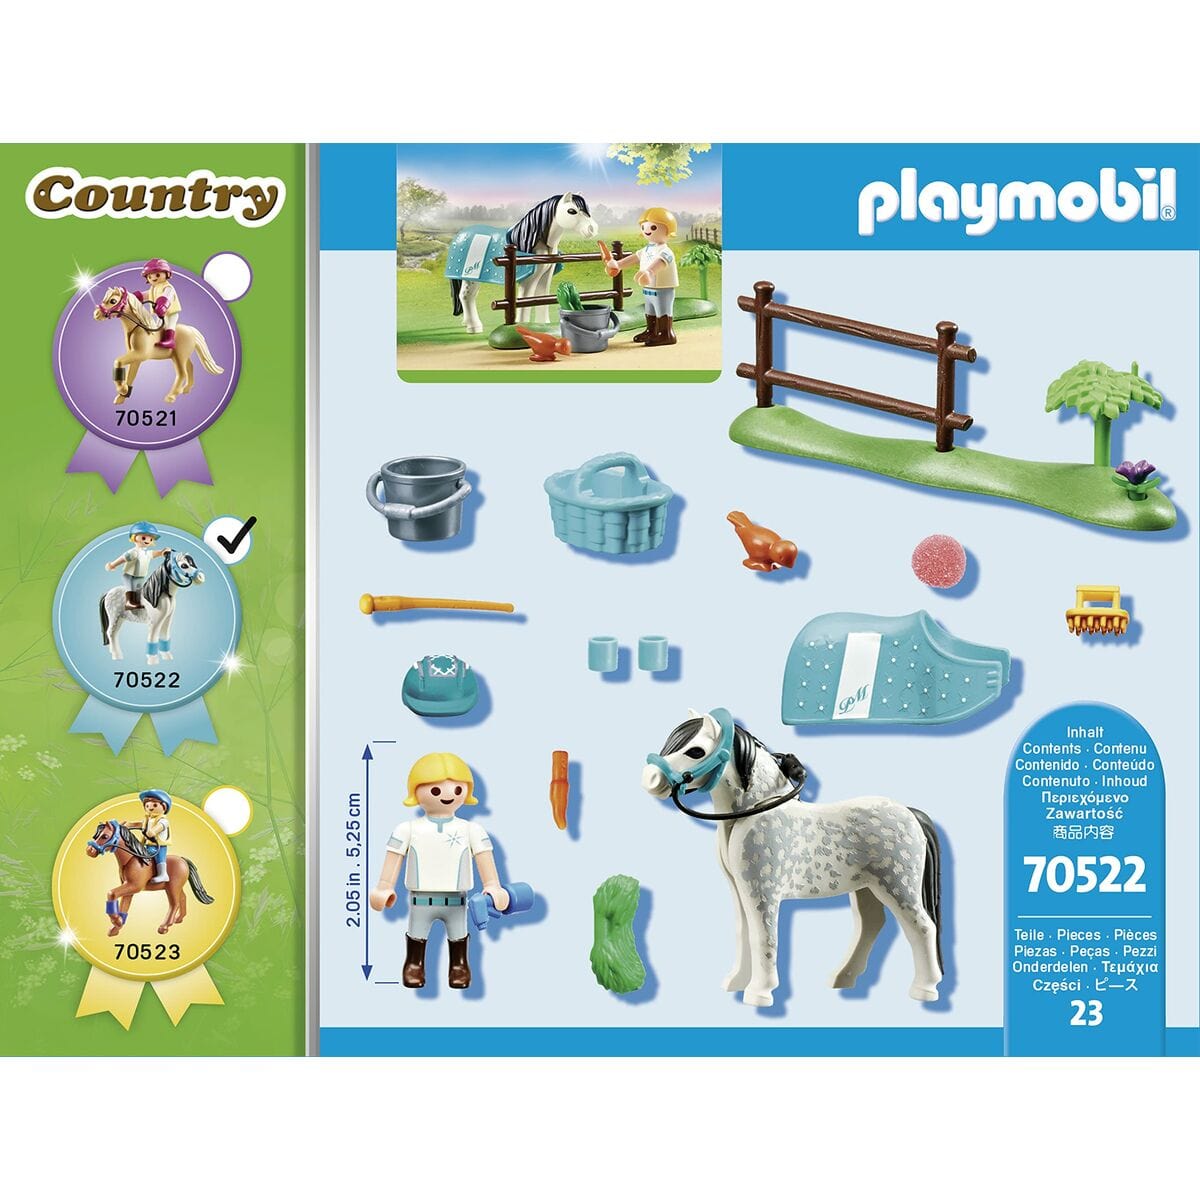 Playmobil Spielzeug | Kostüme > Spielzeug und Spiele > Weiteres spielzeug Playset Playmobil Country 70522 23 Stücke